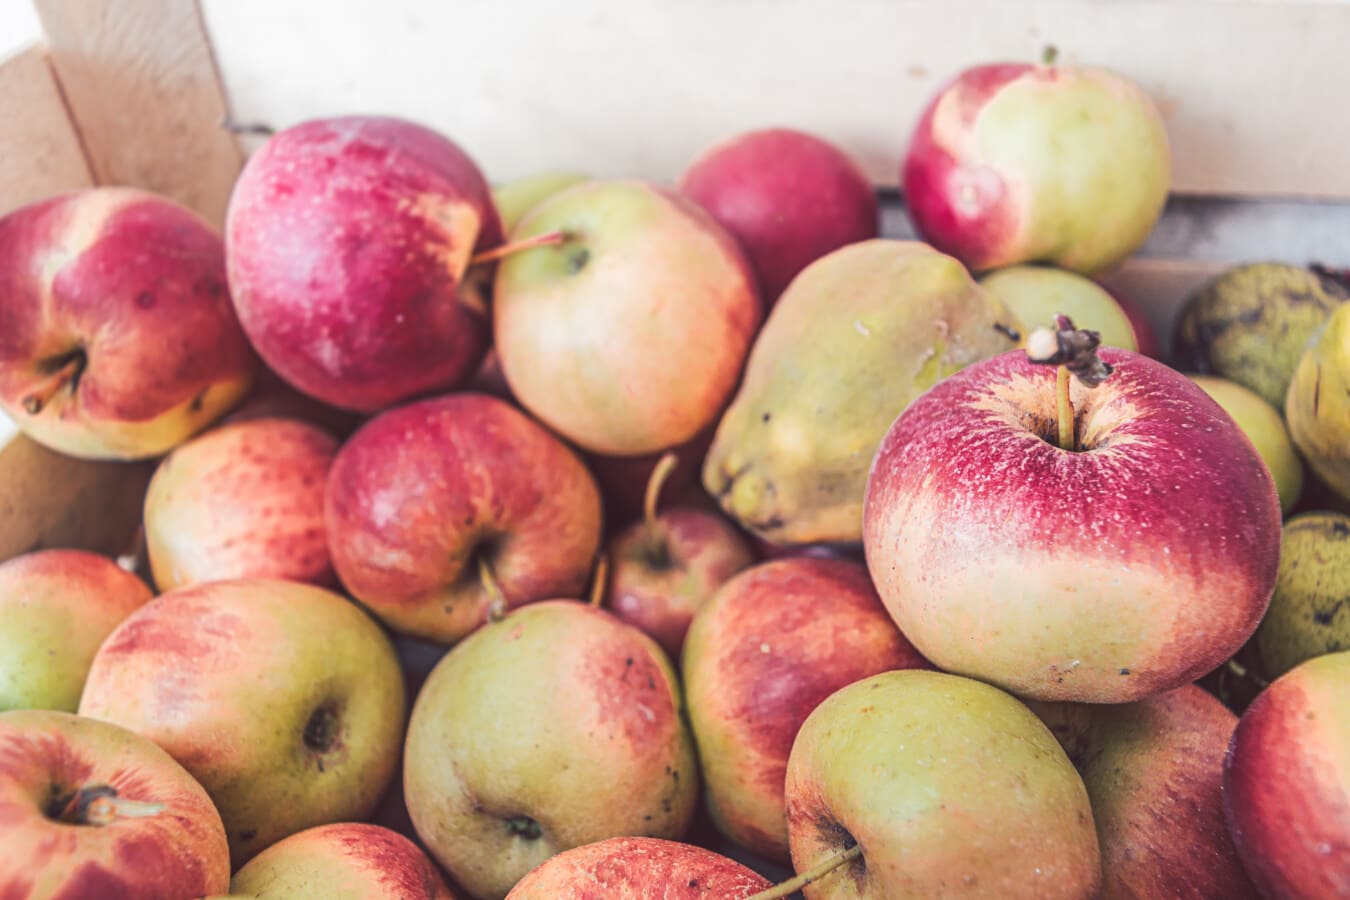 อินทรีย์, แอปเปิ้ล, ผลไม้, ผลไม้สุก, ผลิตภัณฑ์, เกษตร, สด, อร่อย, แอปเปิ้ล, มีสุขภาพดี